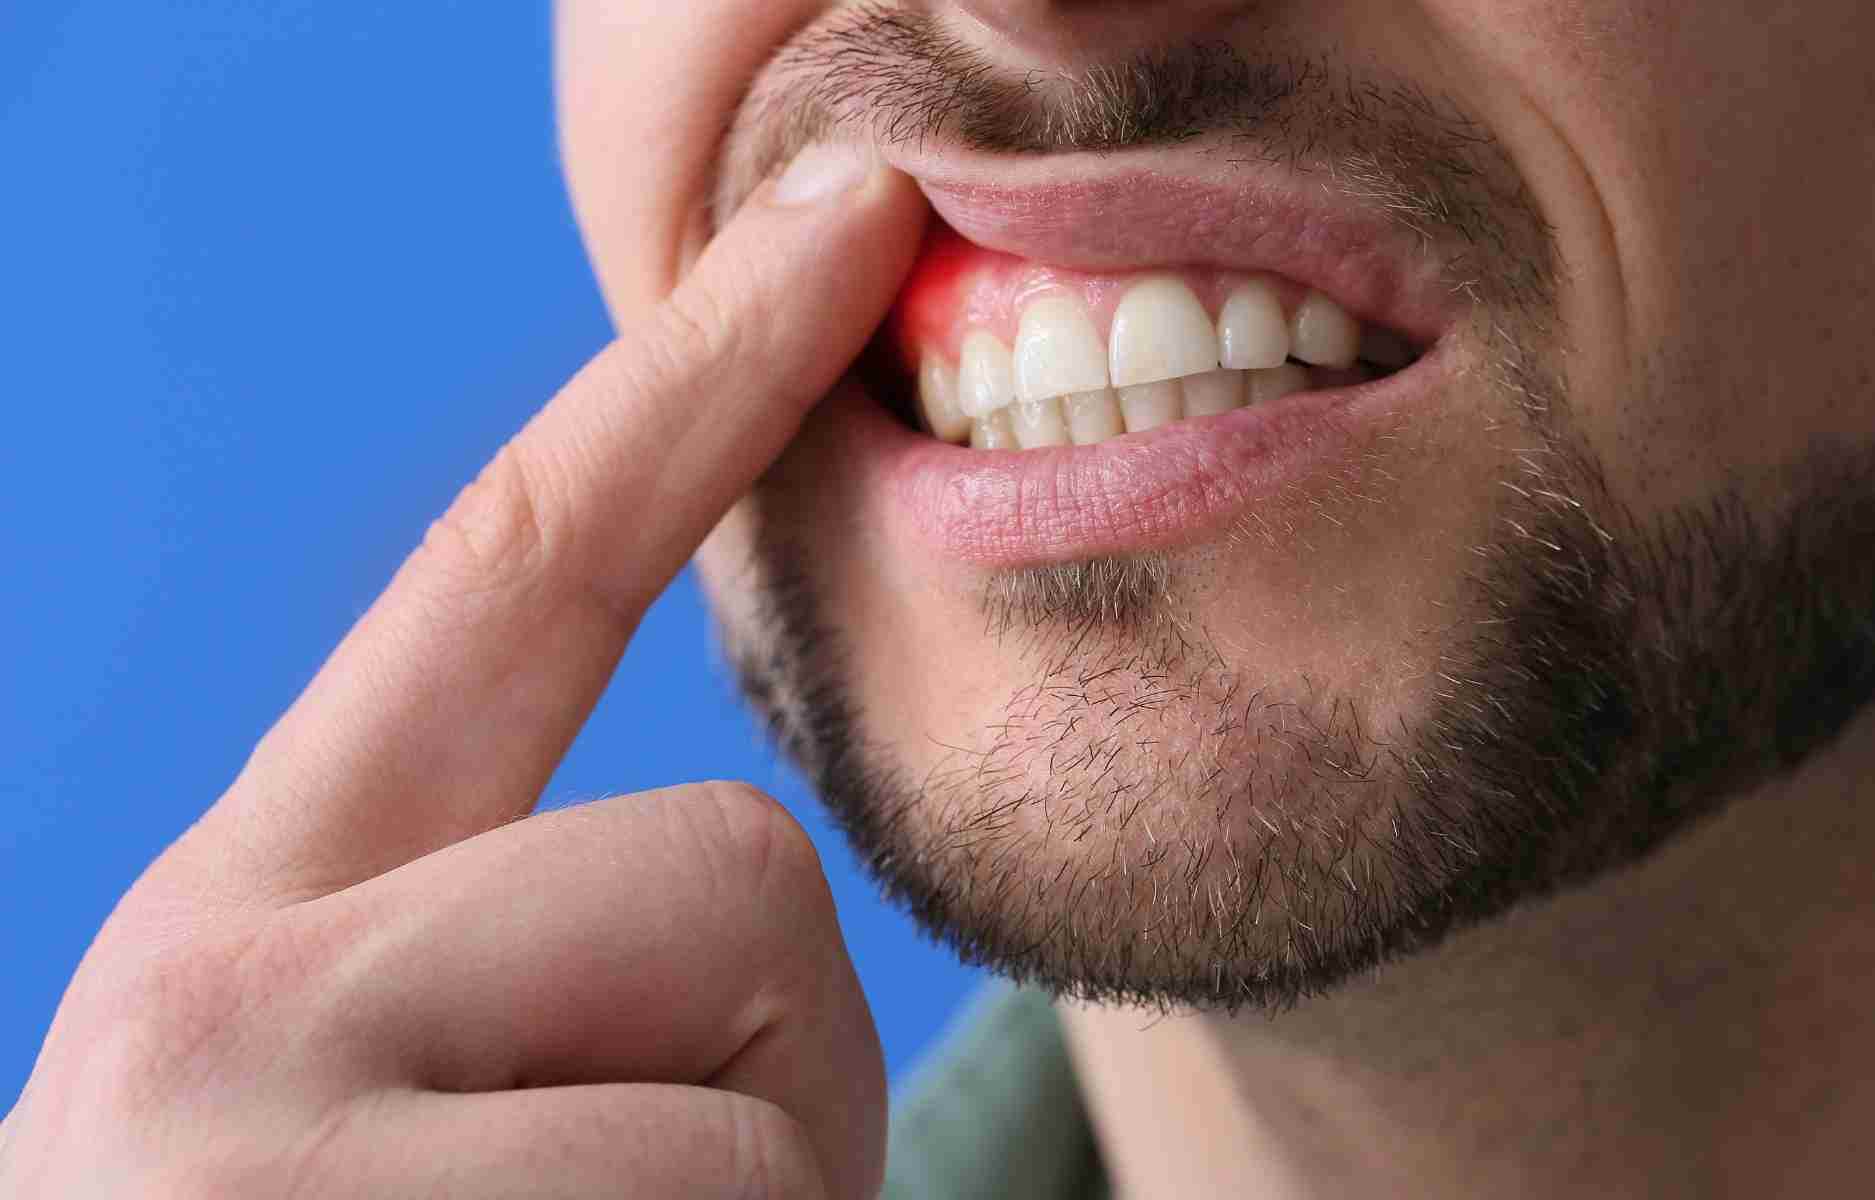 Natečene i crvene desni, krvarenje, crvenilo, i bol su simptomi paradentoze. Uz pravilnu oralnu higijenu, pasta za zube na bazi gline može pomoći u smanjenju rizika. Zdrava ishrana, izbegavanje pušenja i alkohola takođe su ključni faktori za prevenciju. Brinite o svom osmehu i oralnom zdravlju!